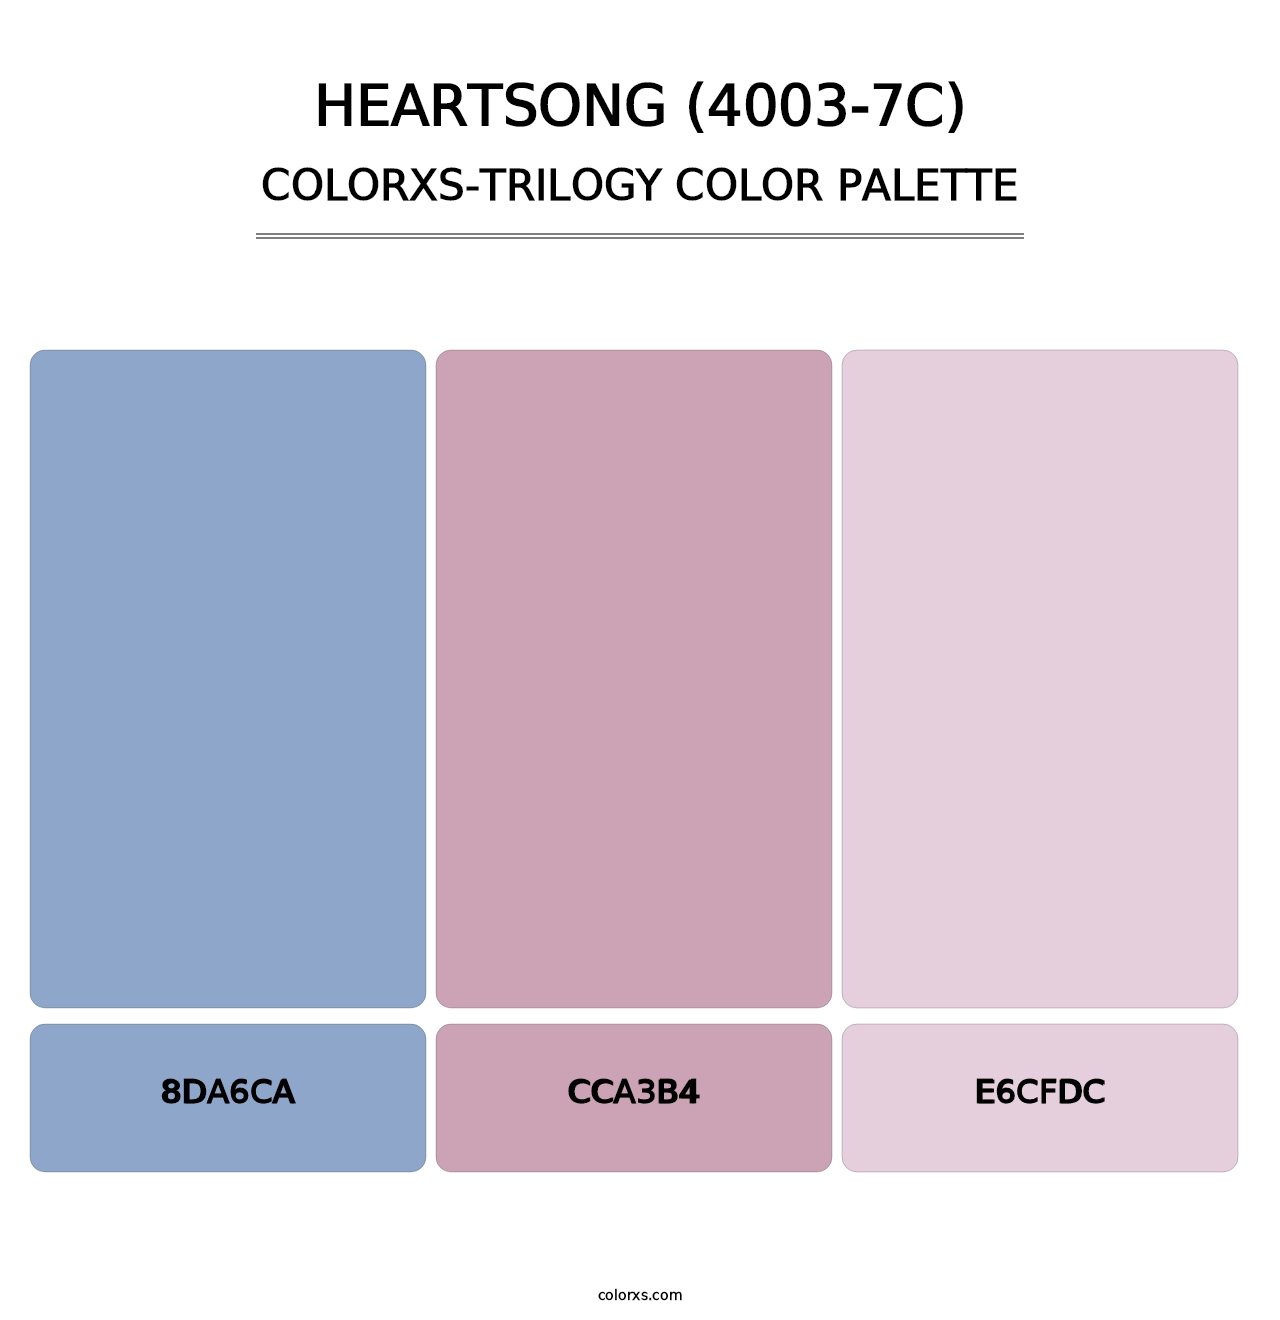 Heartsong (4003-7C) - Colorxs Trilogy Palette